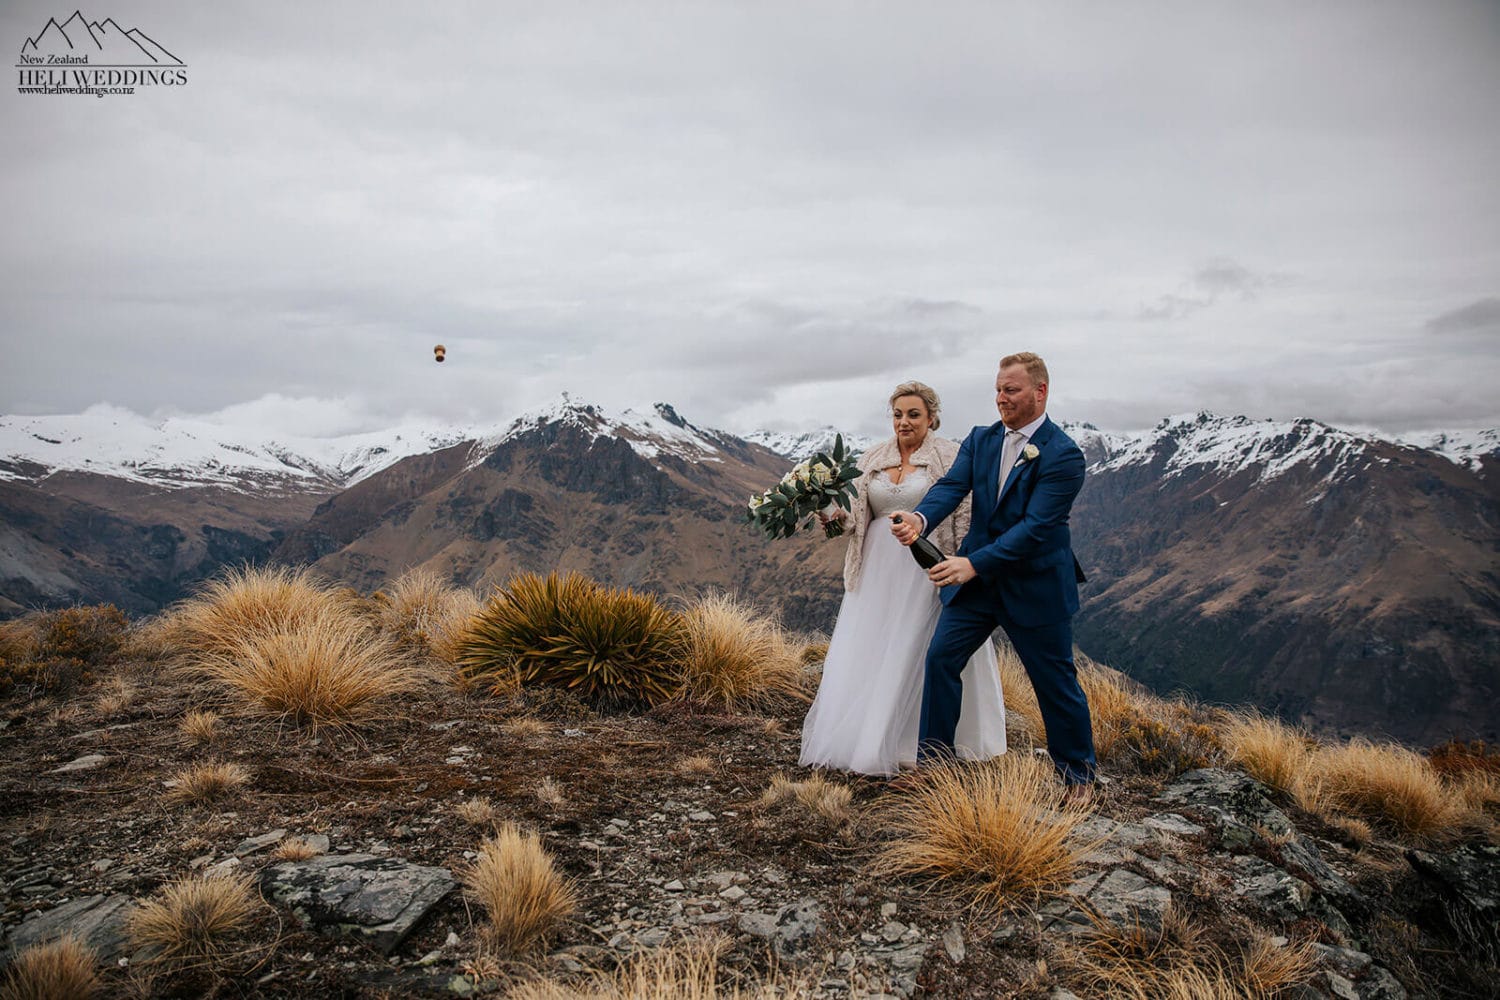 Elopement Wedding Package in Queenstown New Zealand